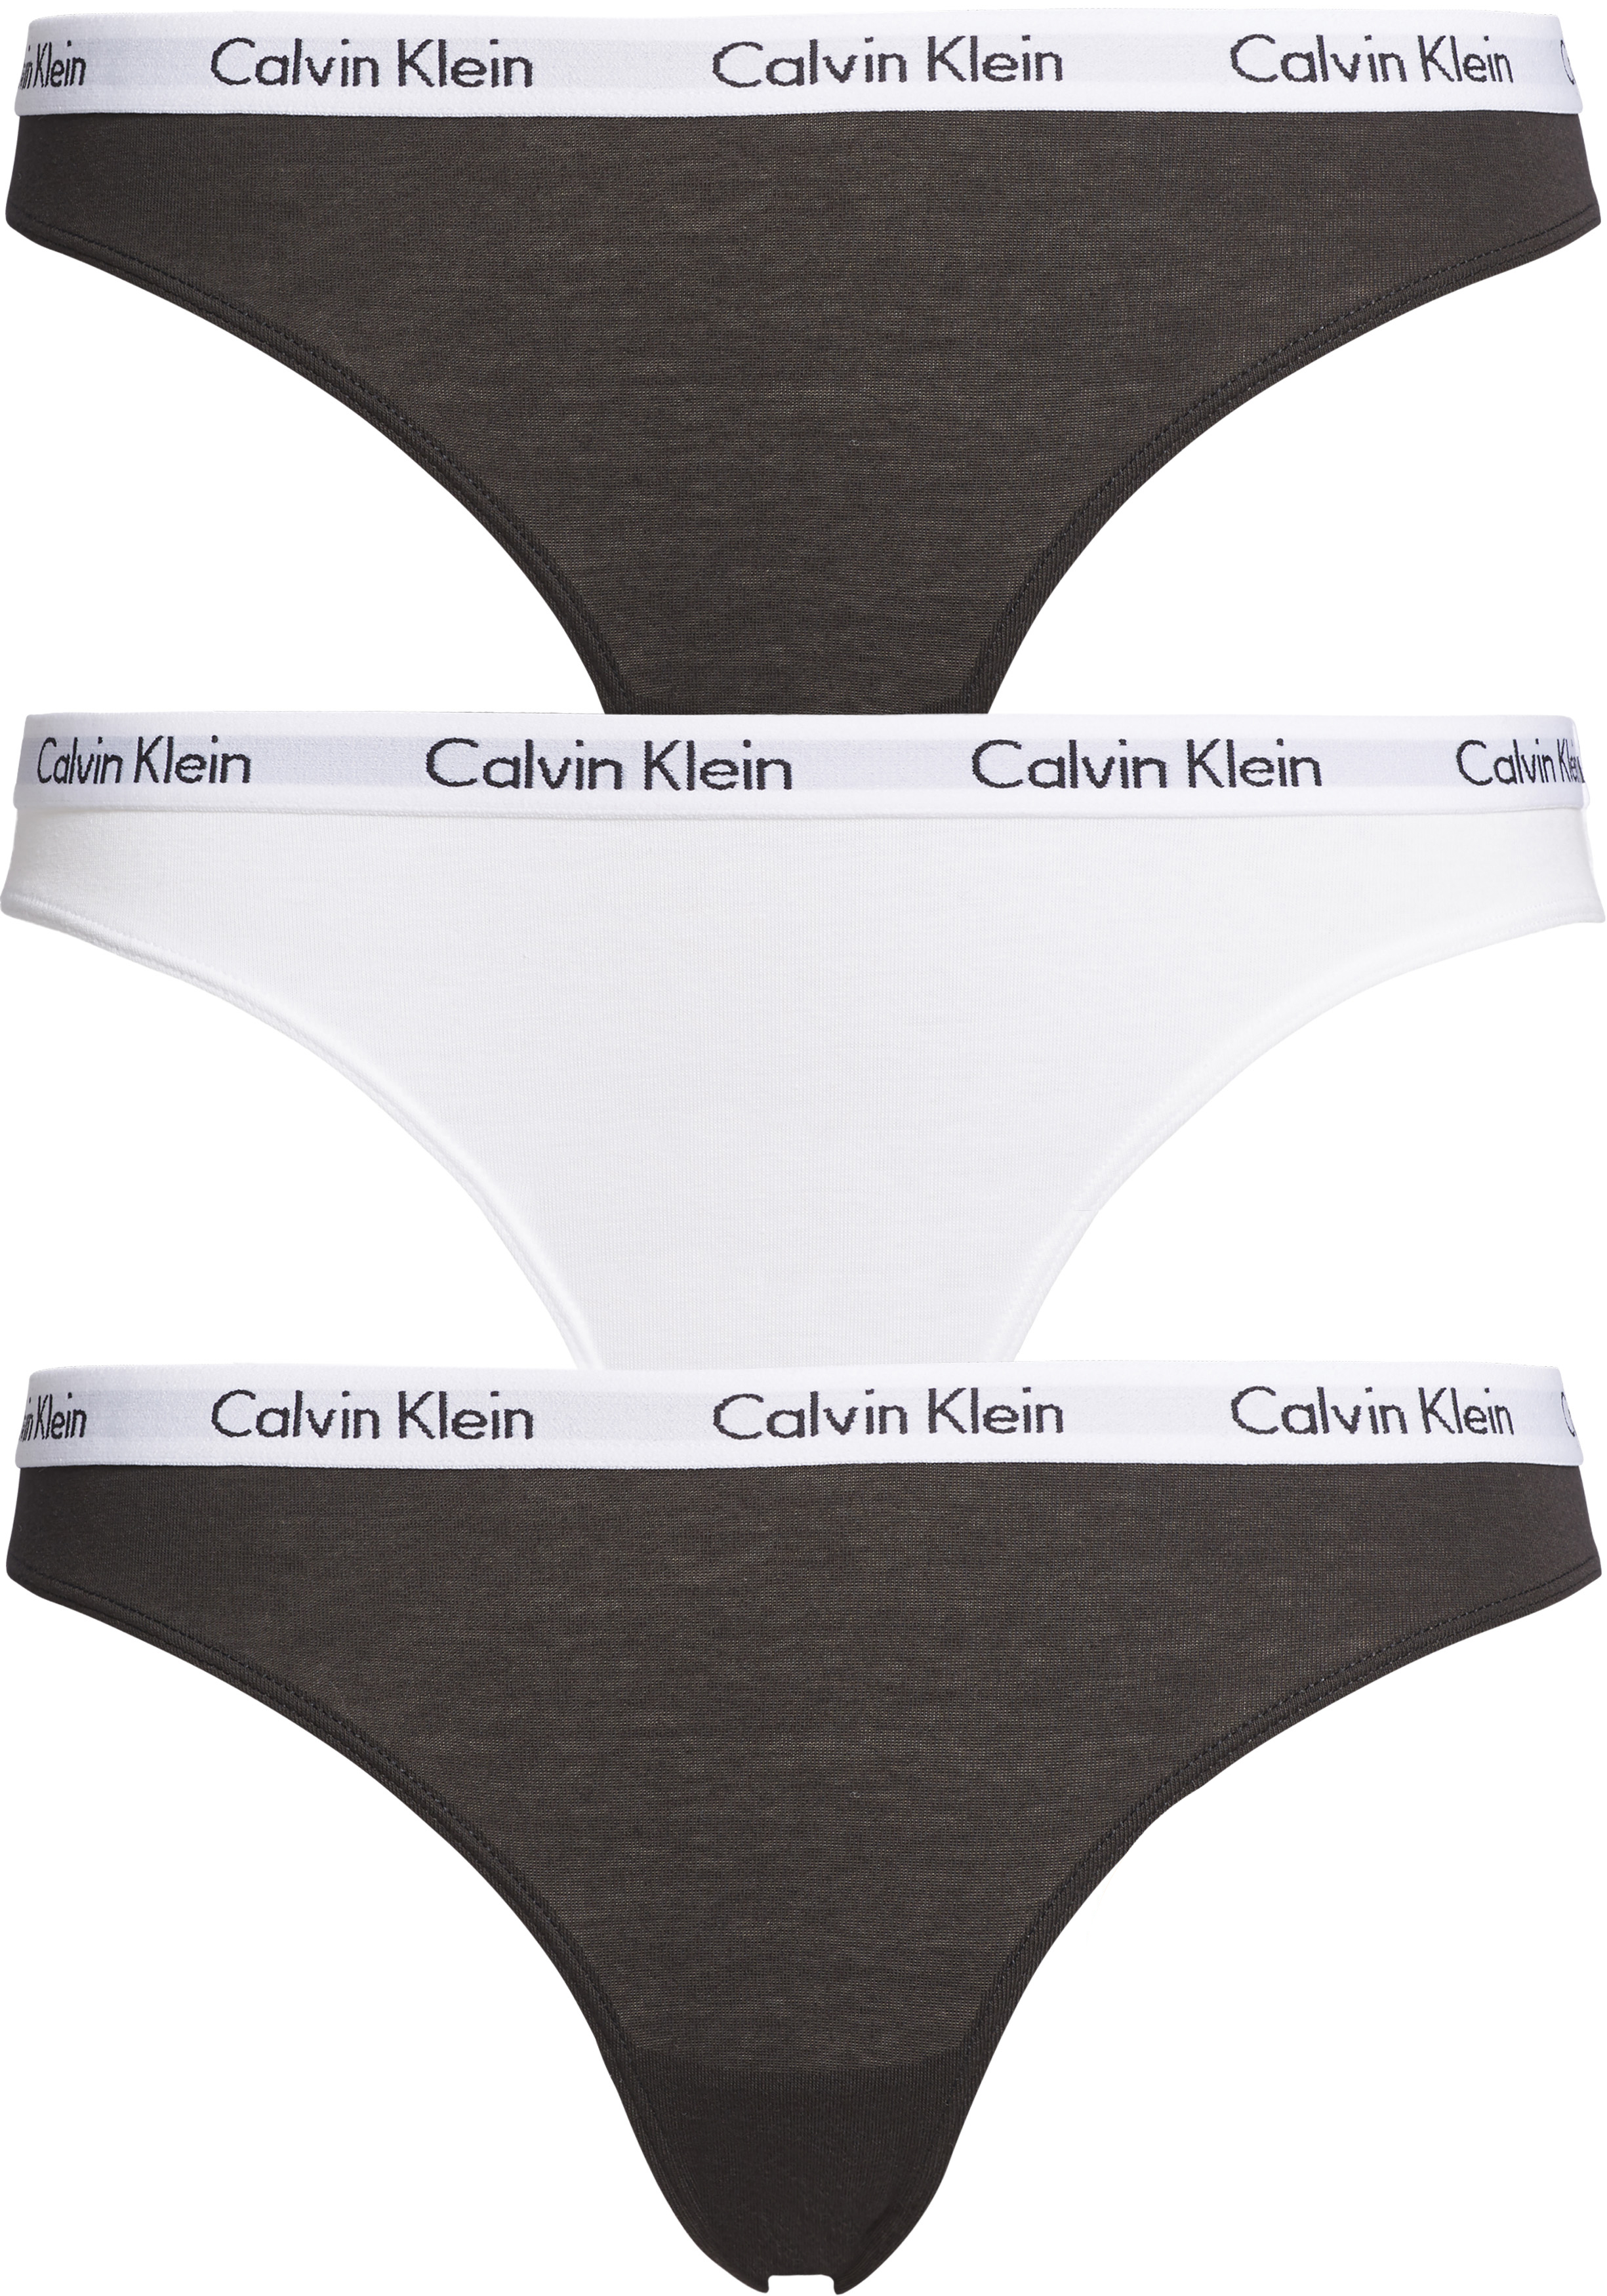 Besparing Decimale overschot Calvin Klein dames slips (3-pack), zwart, wit en zwart - 20% Paaskorting op  (bijna) alles